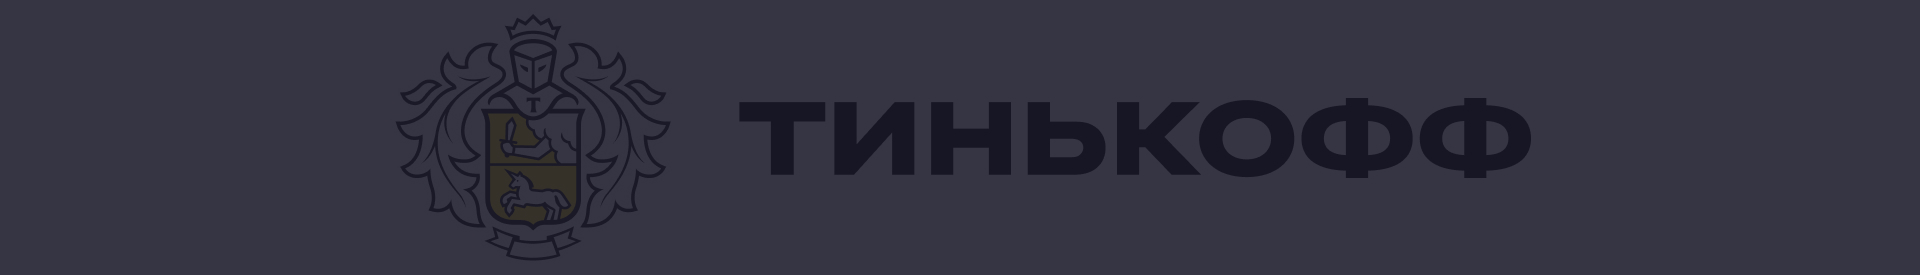 Акции и спецпредложения в банке Тинькофф в Москве